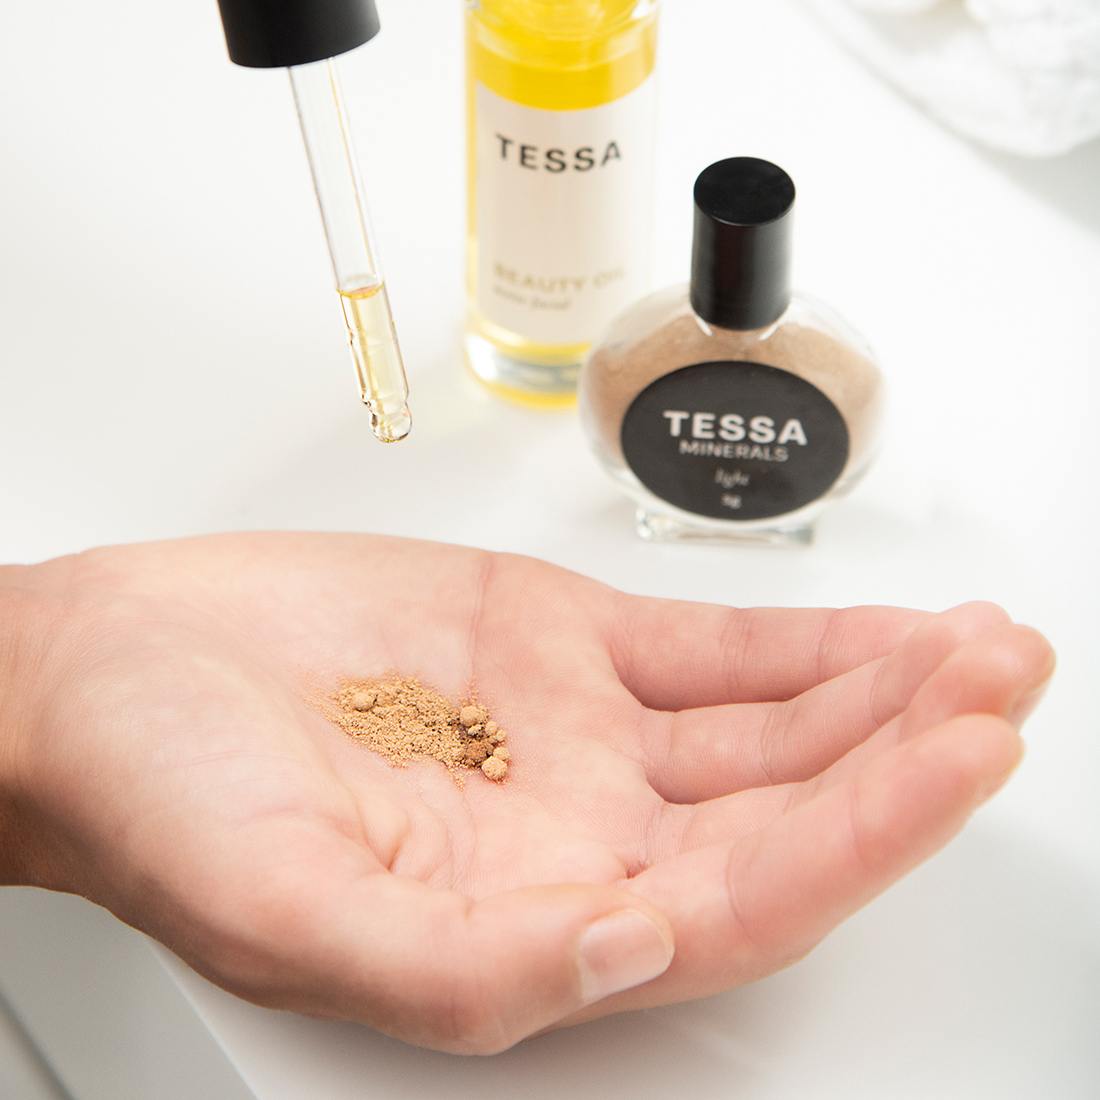 TESSA Minerals es una base en polvo que se mezcla con tu aceite favorito para formar una base de textura suave. Permite lograr un efecto uniforme en la piel, manteniéndola hidratada y sin sensación de tirantez.